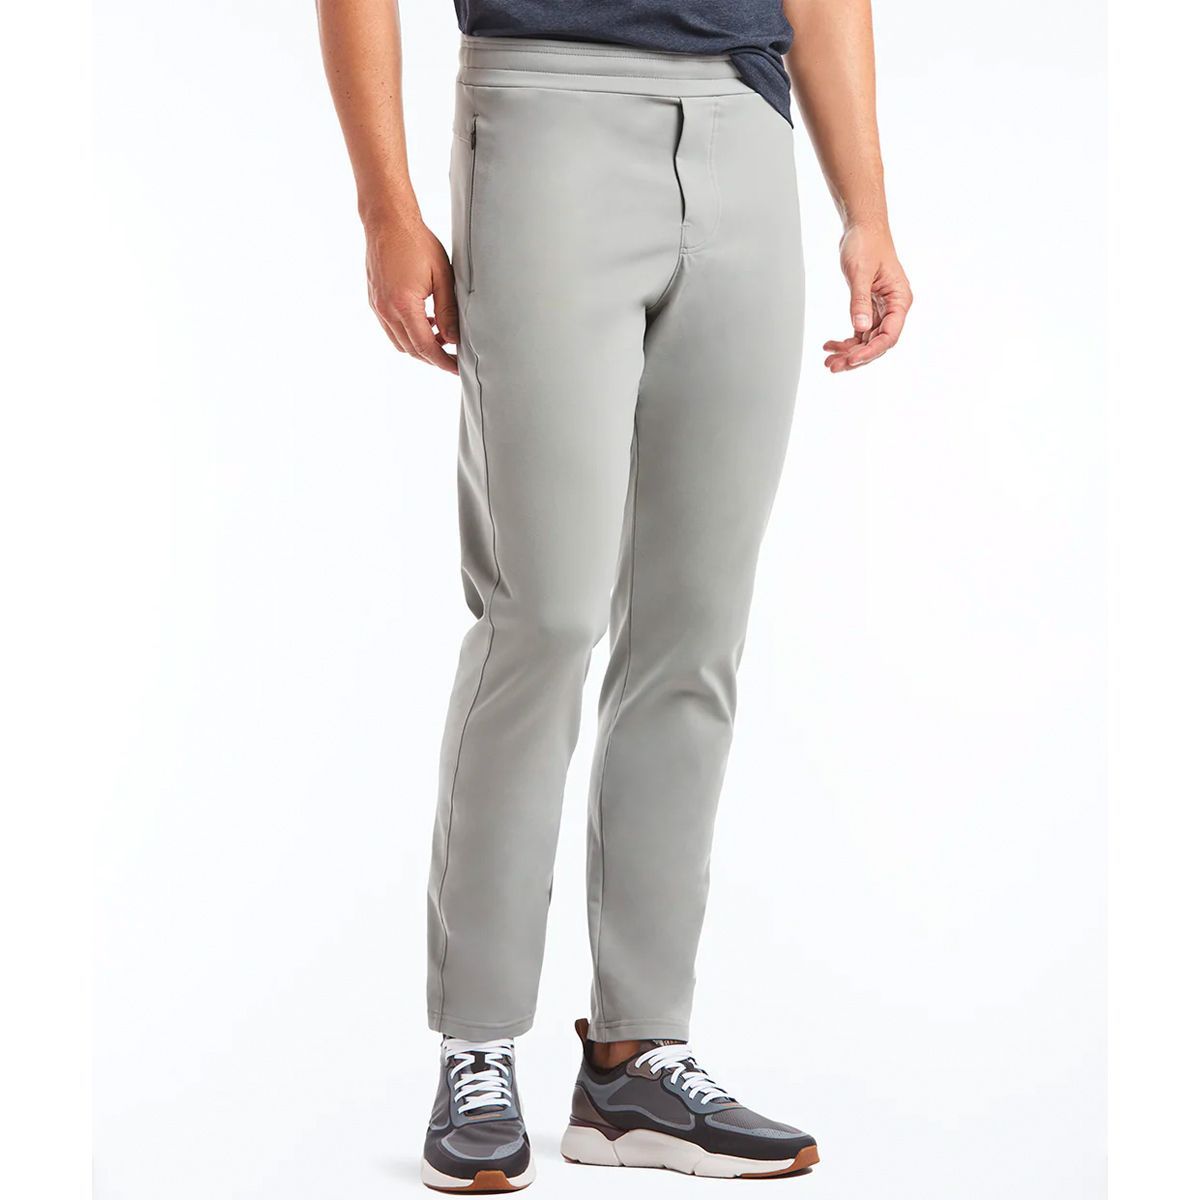 Buy Orange Trousers & Pants for Women by POPWINGS Online | Ajio.com